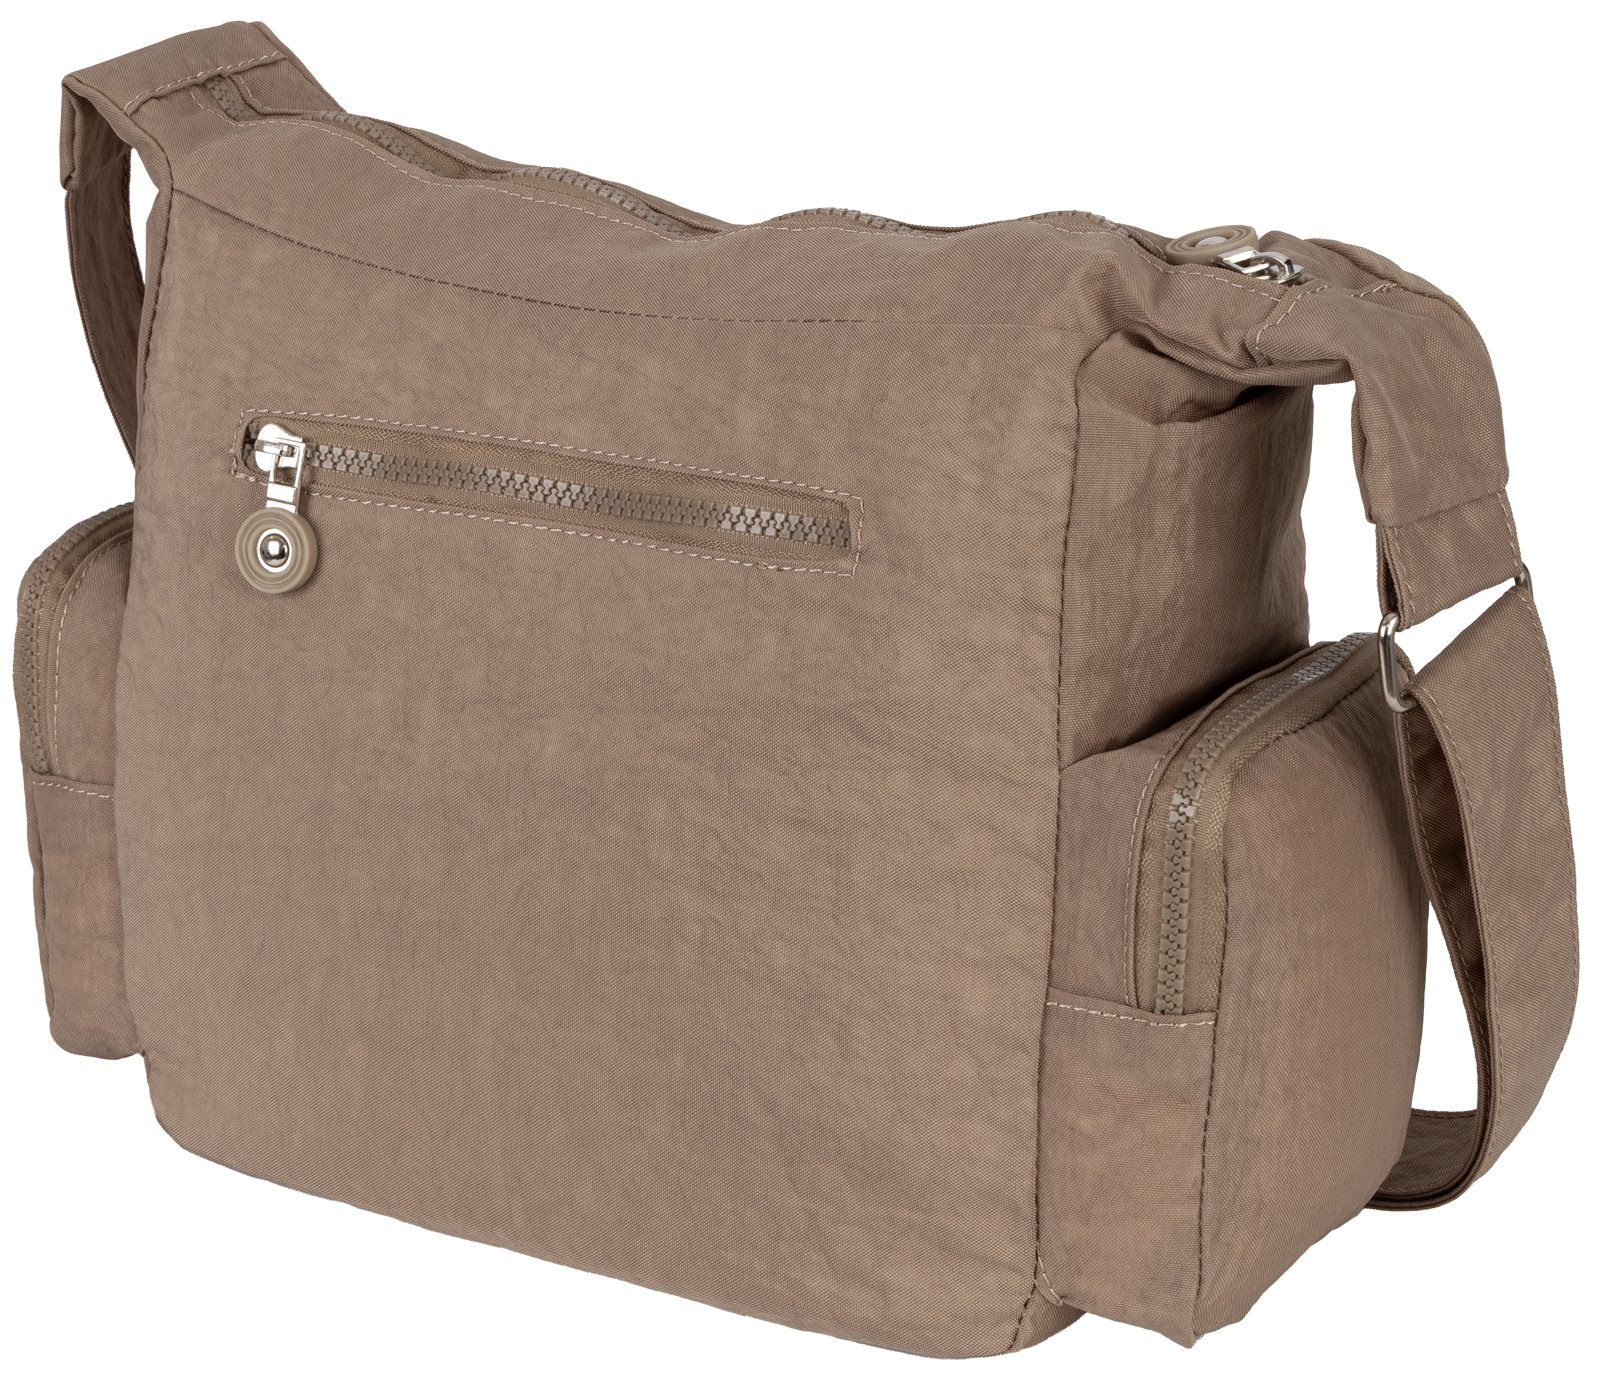 Handtasche BAG als Schultertasche, Umhängetasche tragbar Umhängetasche Damentasche Umhängetasche Schultertasche Taupe, STREET